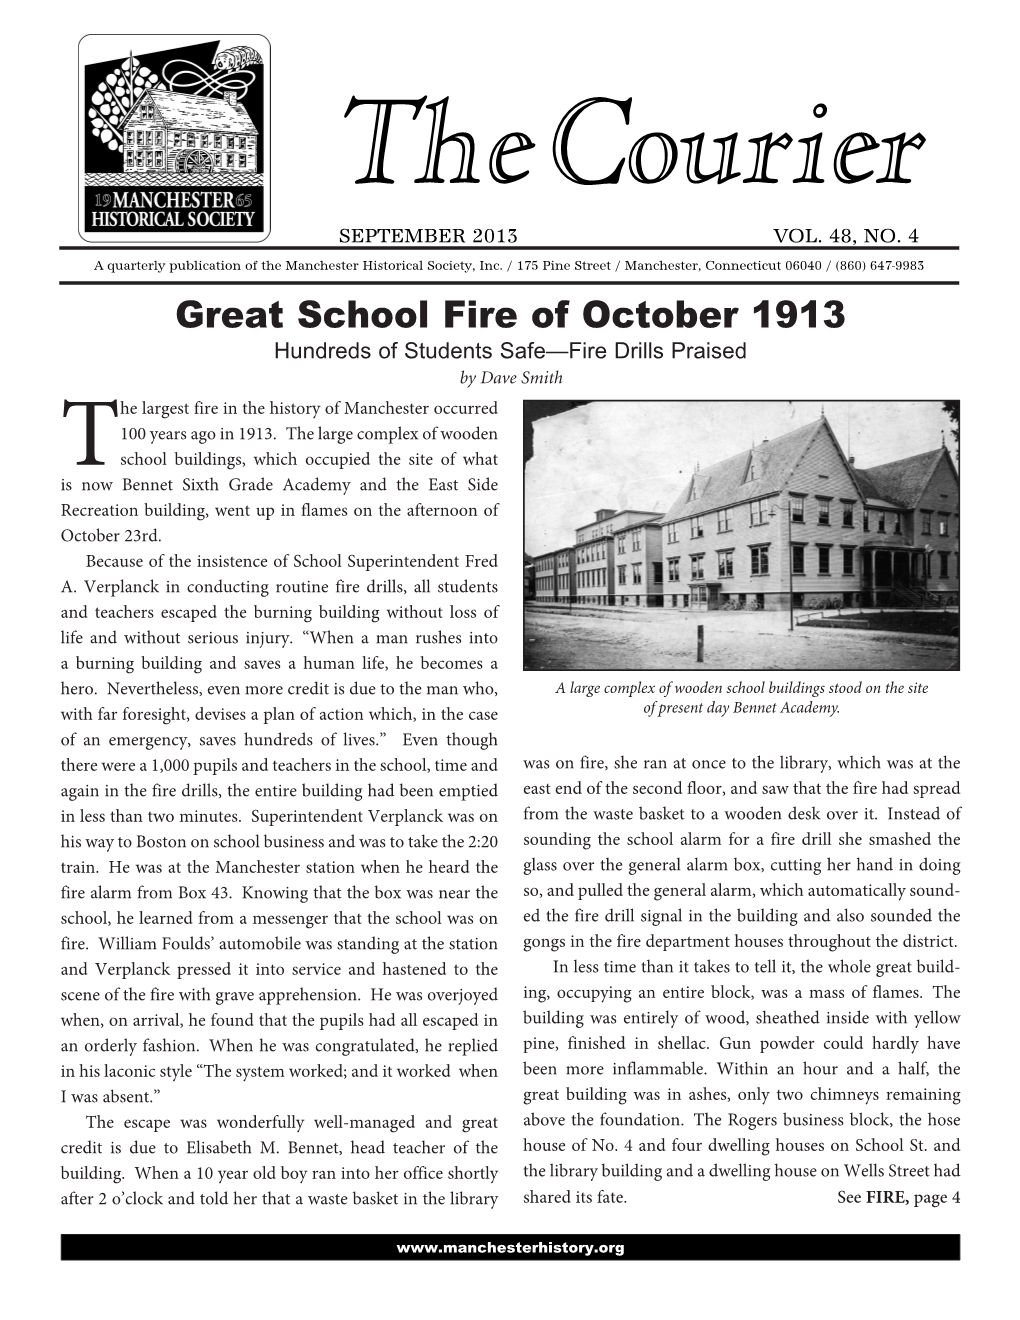 Great School Fire of October 1913